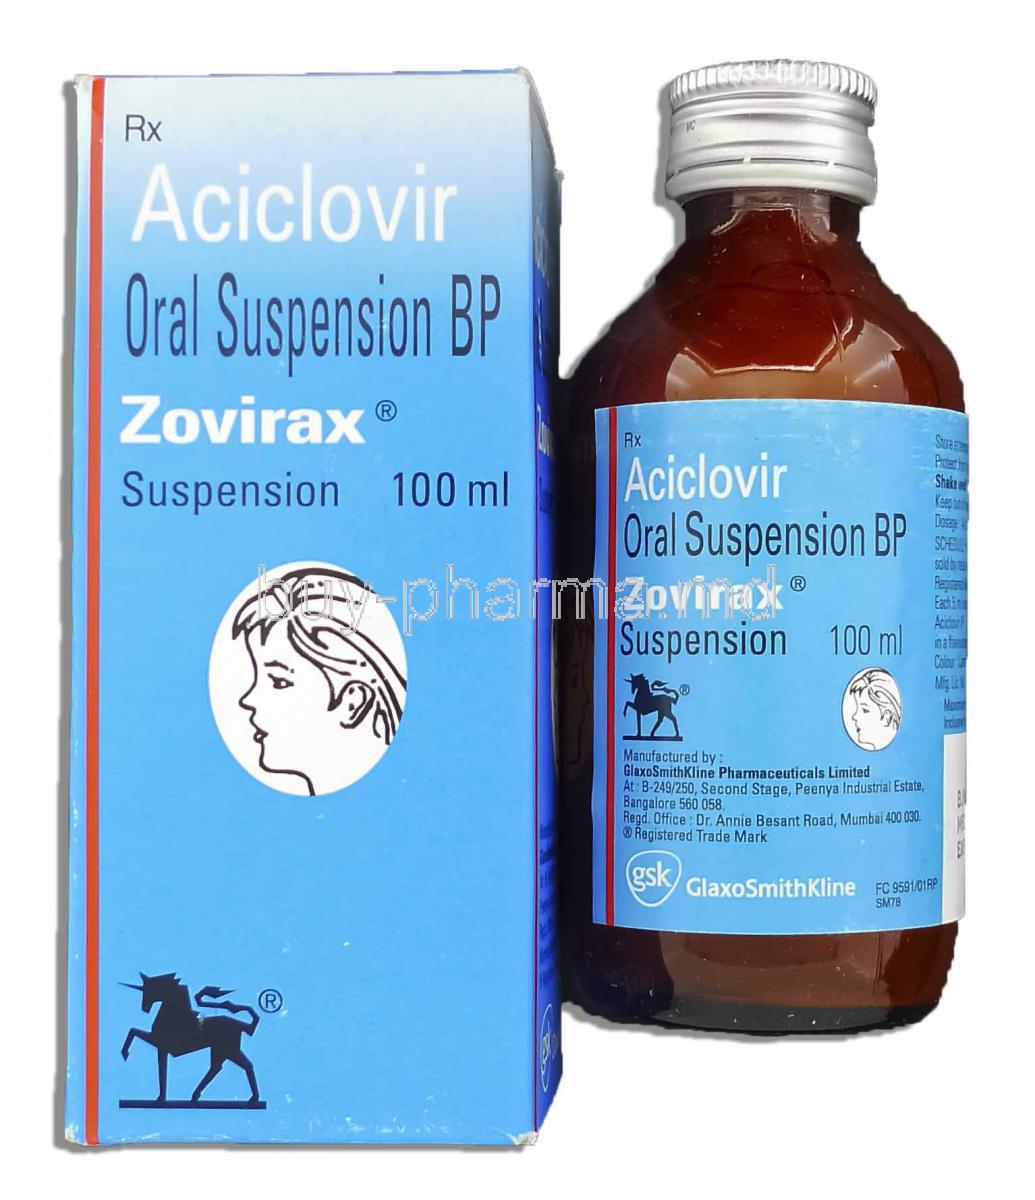 Zovirax Suspension 100ml, Generic Aciclovir Oral Suspension BP